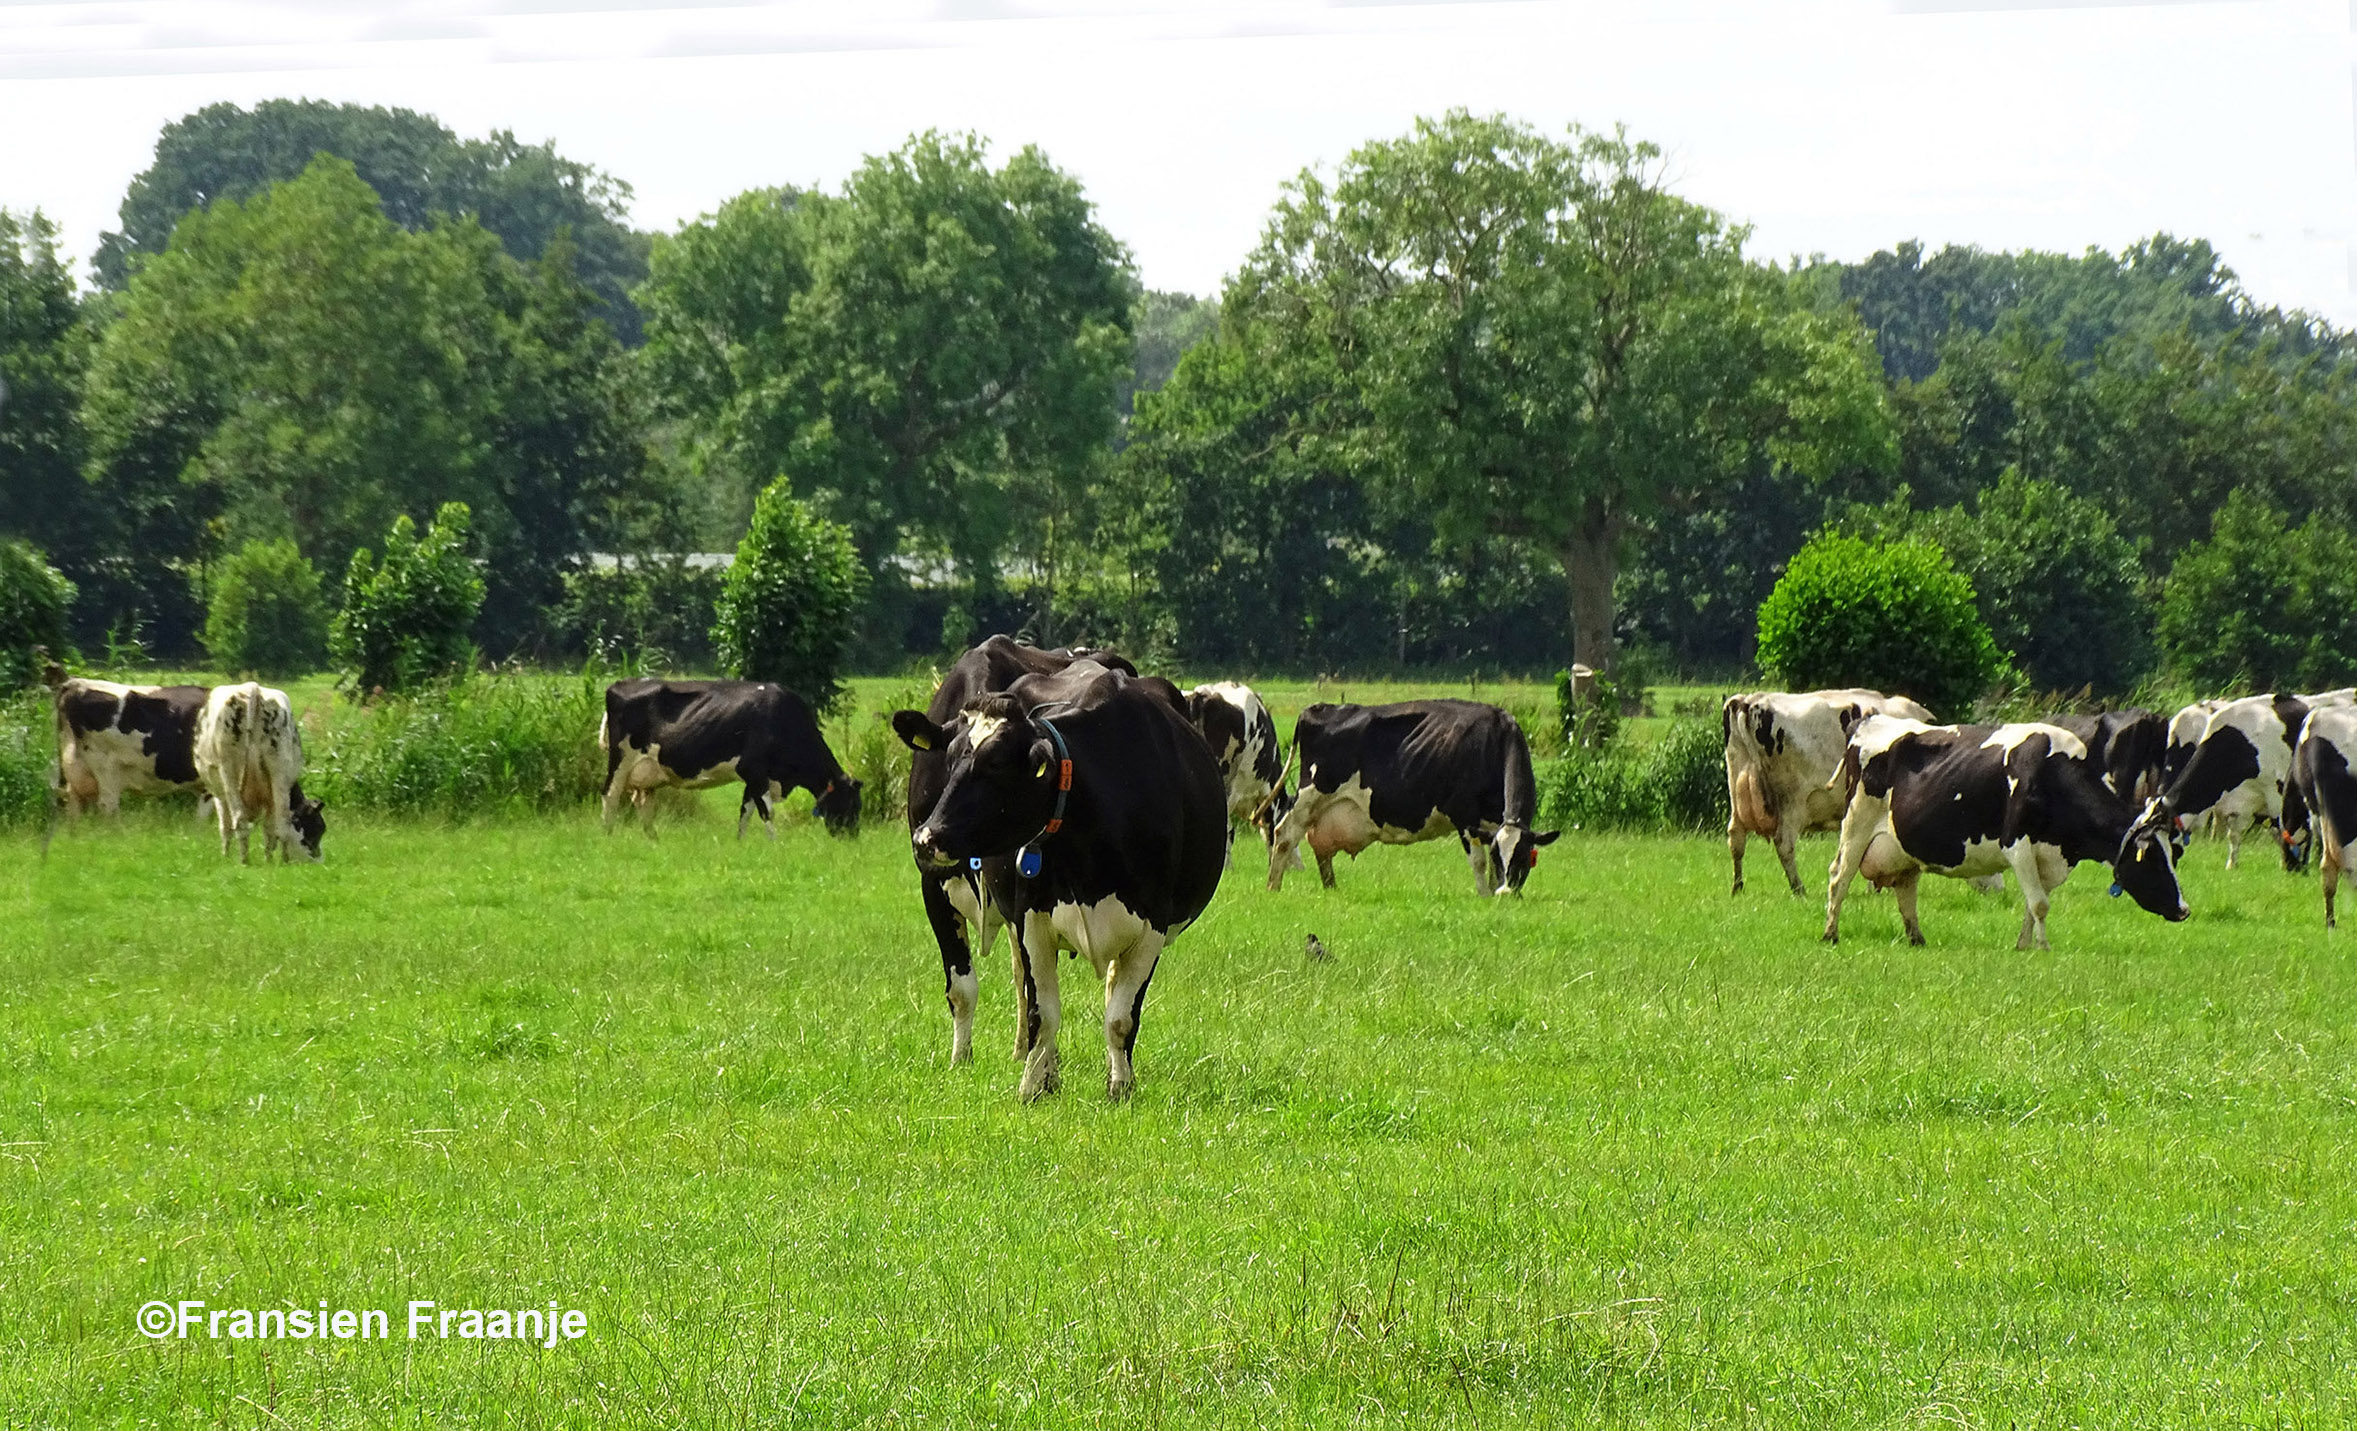 Dit beeld is toch grandioos met die zwartbonte koeien in de wei - Foto: ©Fransien Fraanje